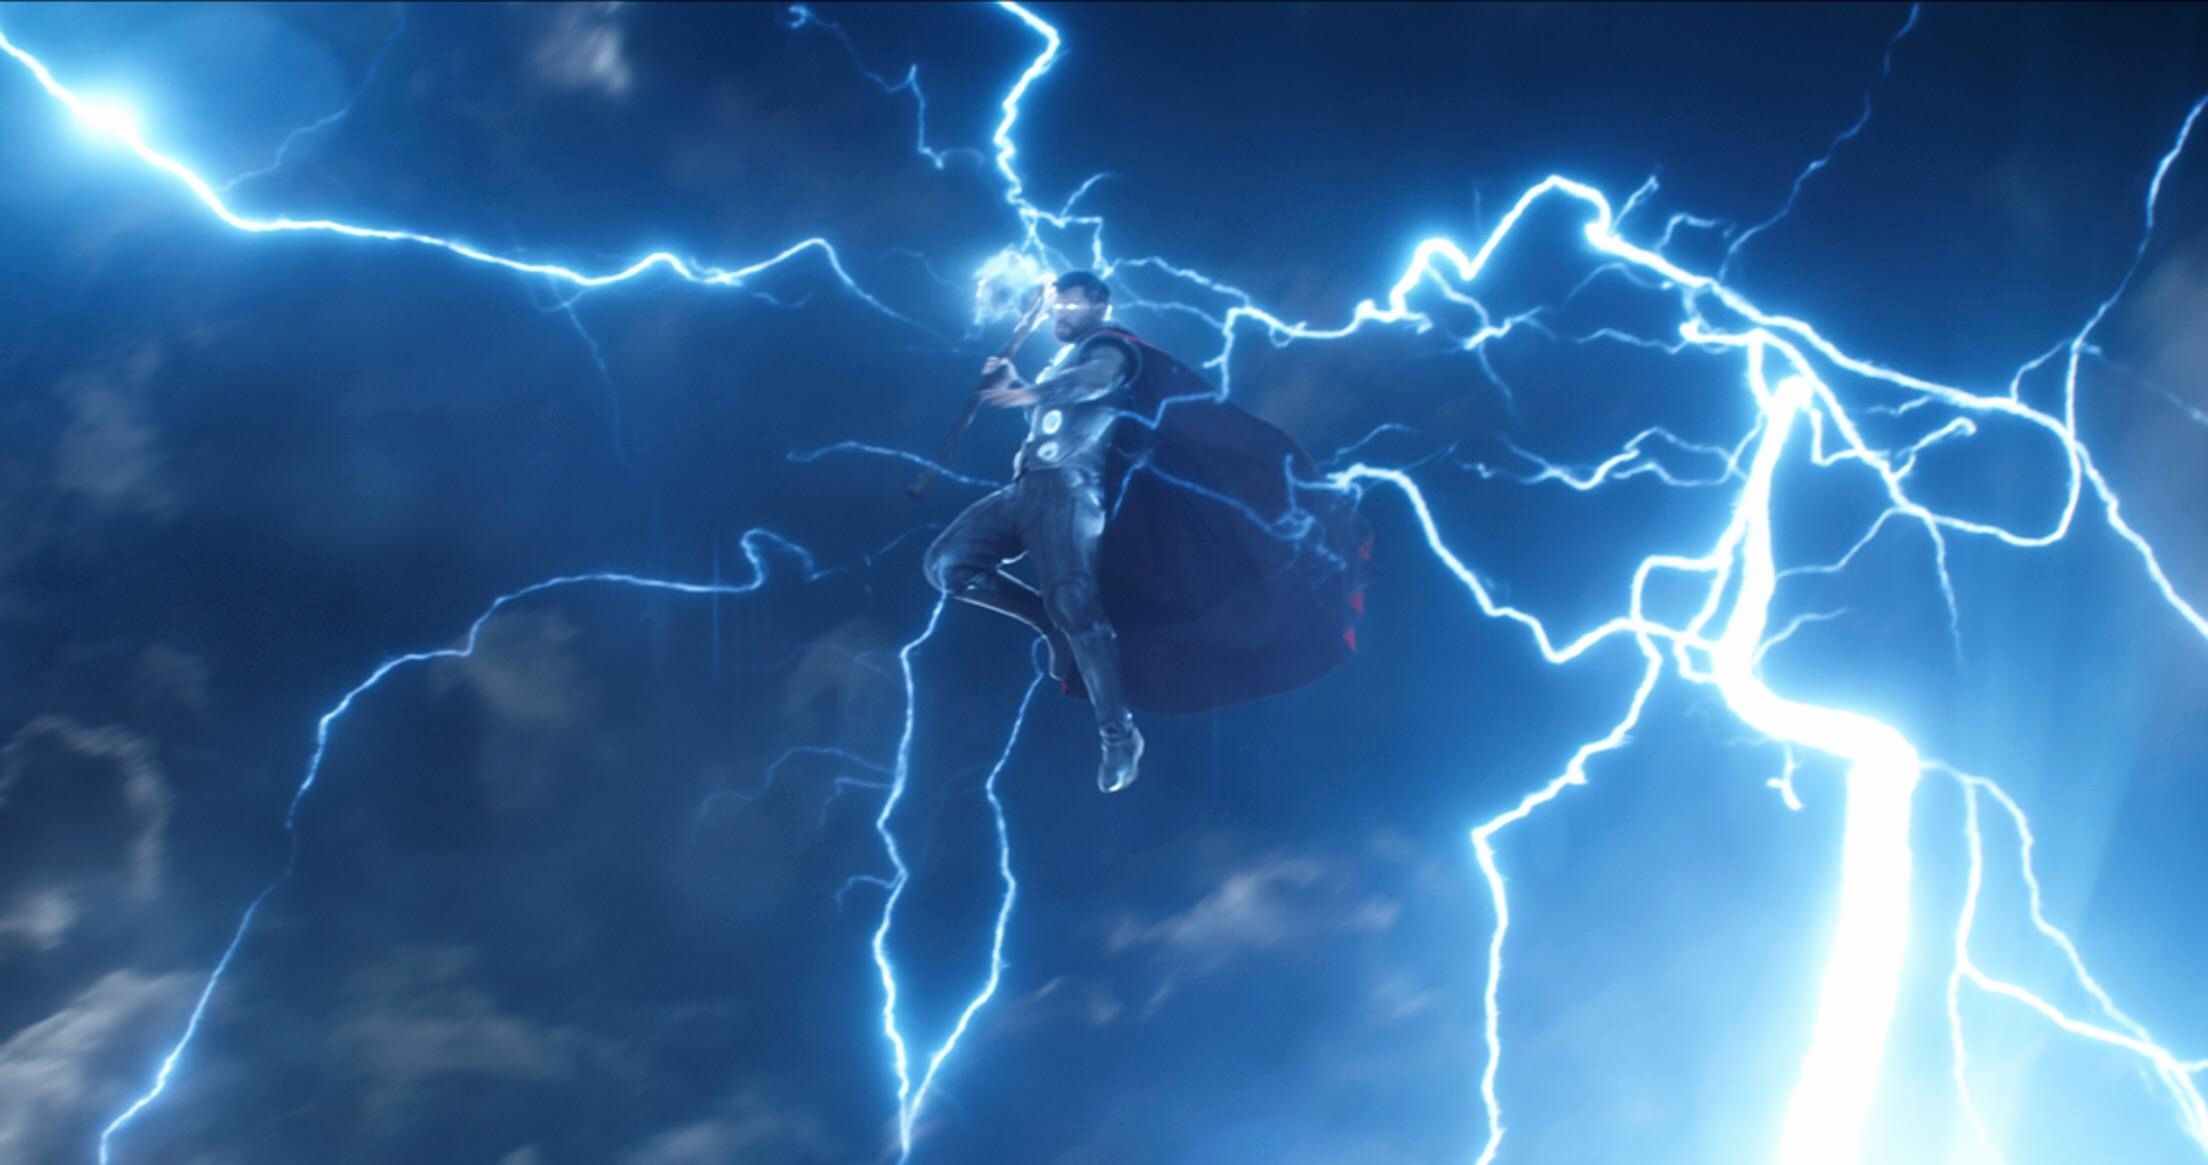 Ragnarok Thor Lightning Wallpaper and Movie